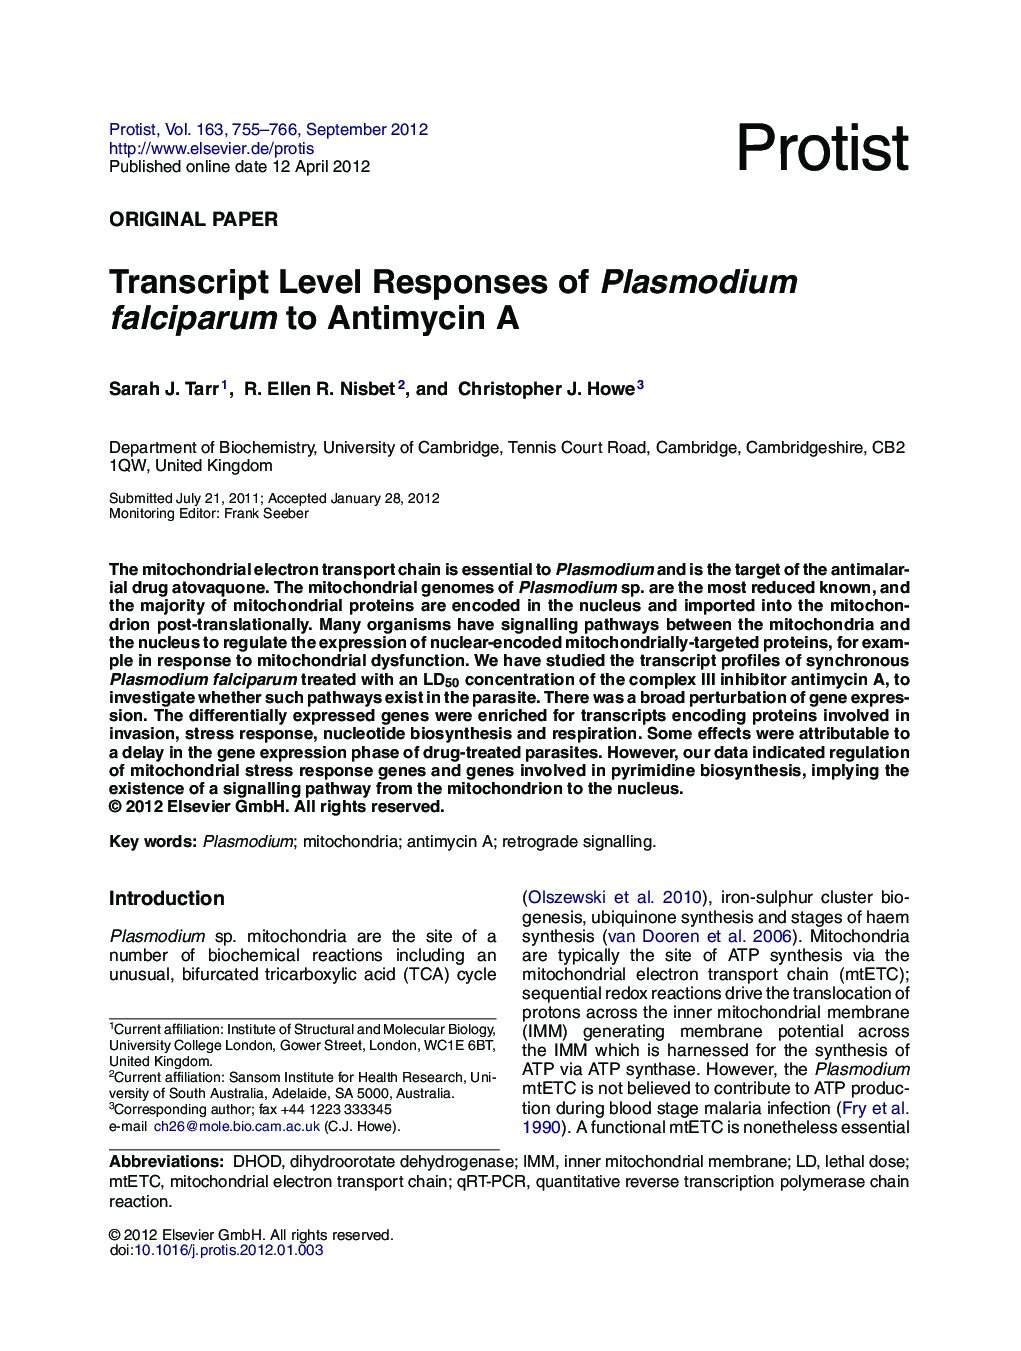 Transcript Level Responses of Plasmodium falciparum to Antimycin A